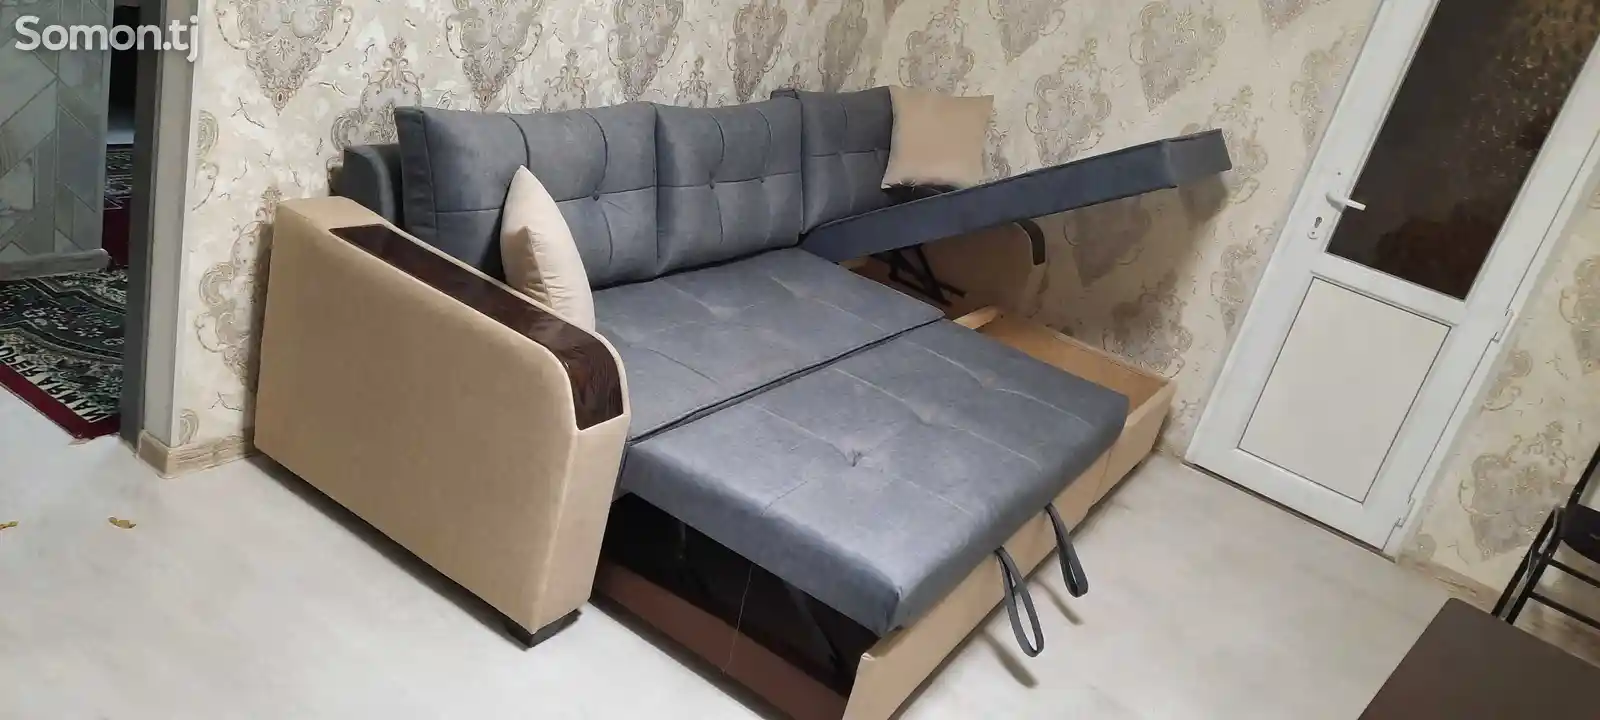 Раскладной диван хайтек на заказ-5